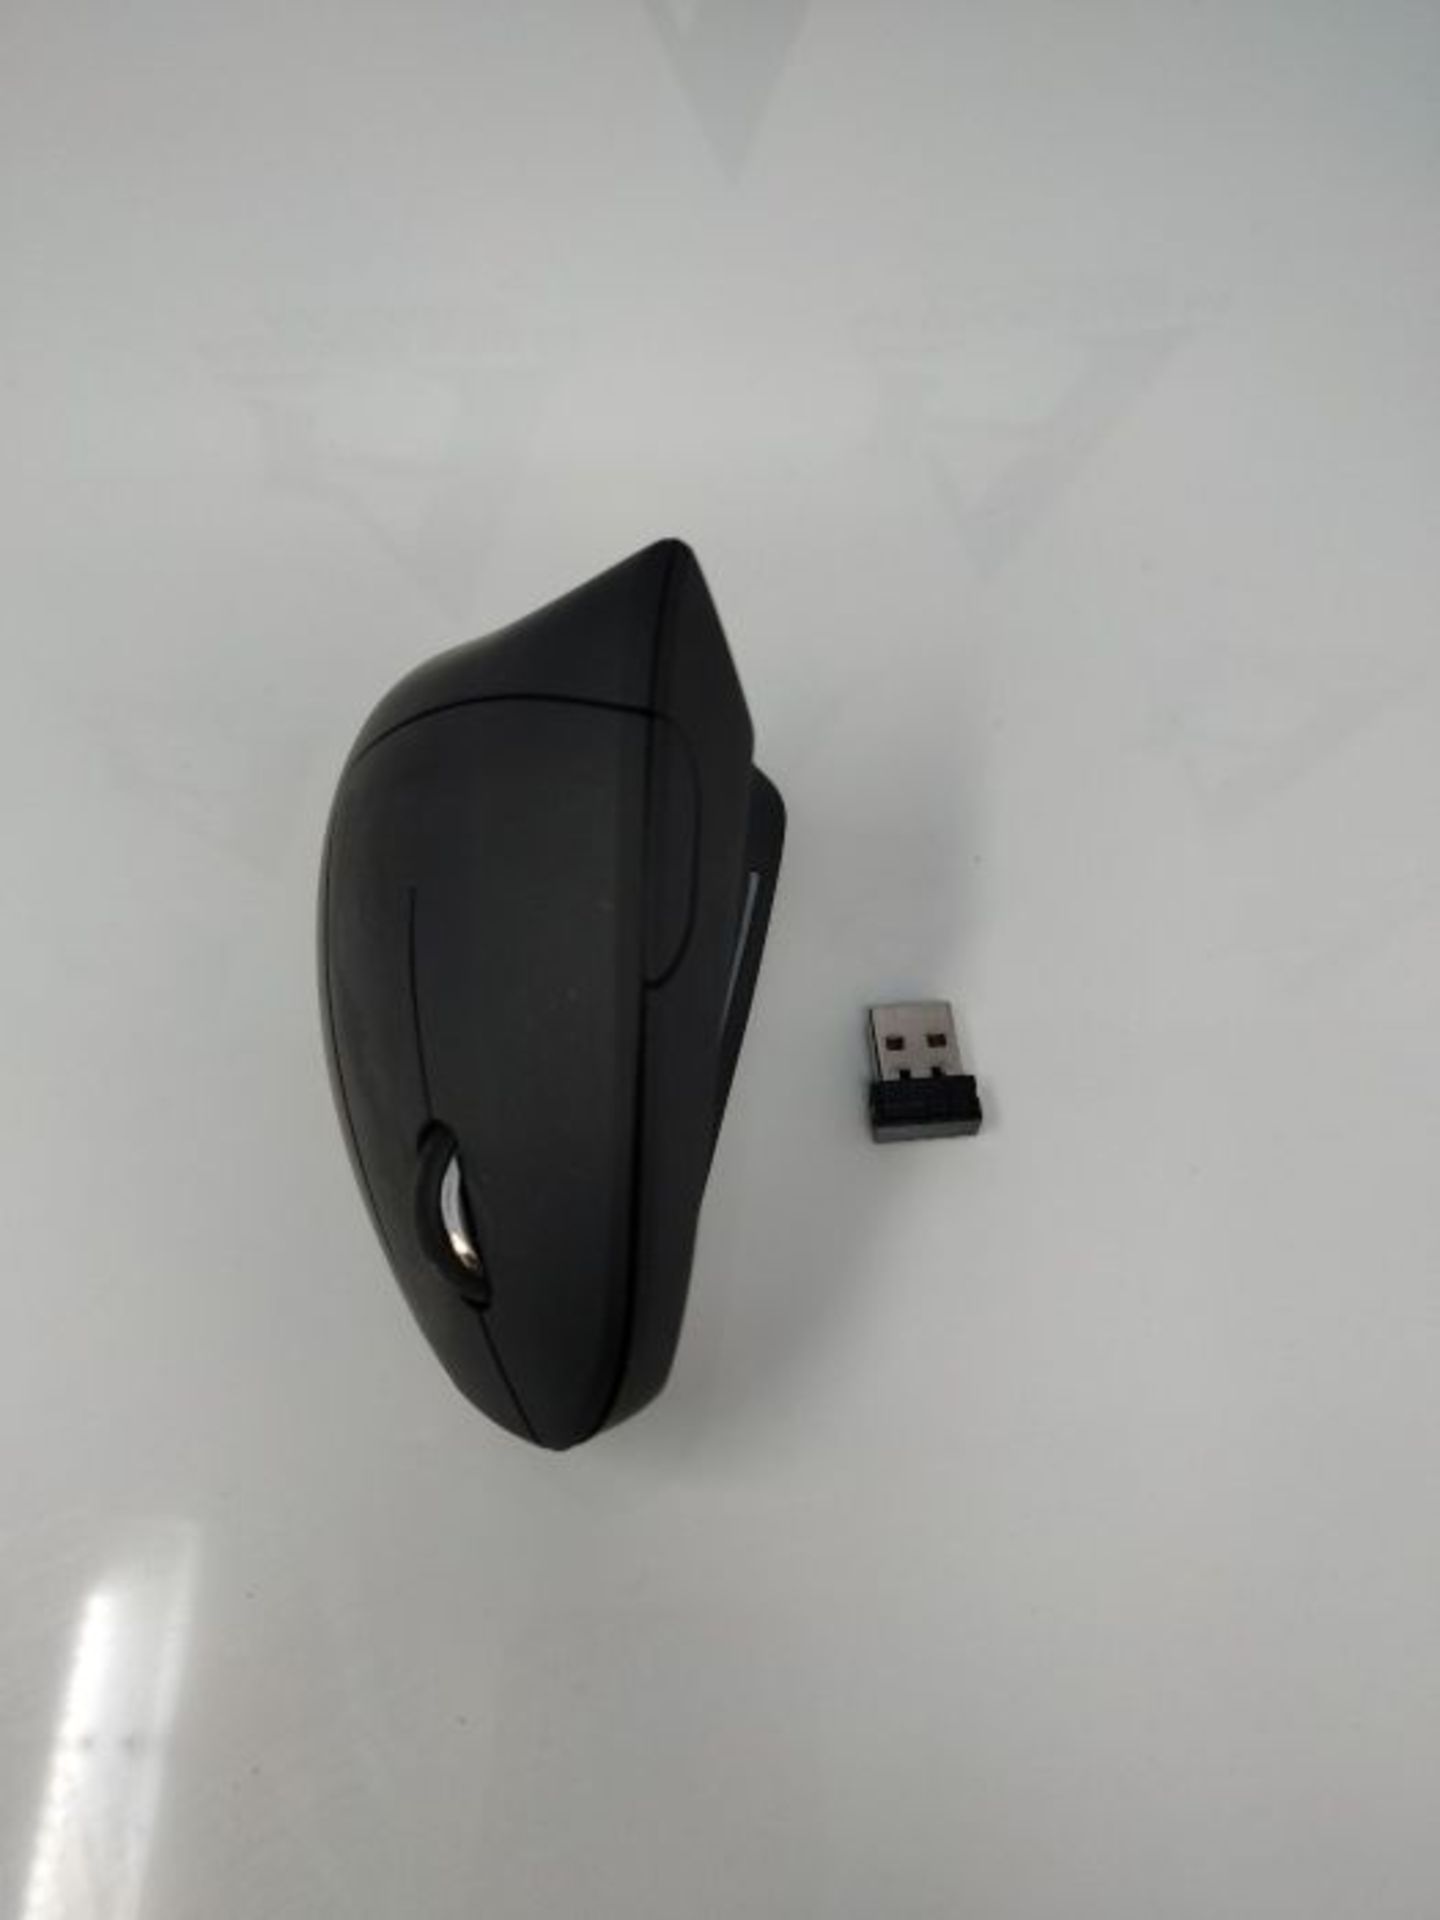 Trust Verto Mouse Verticale Wireless, Mouse Ergonomico senza Filo, 800/1200/1600 DPI, - Image 3 of 3